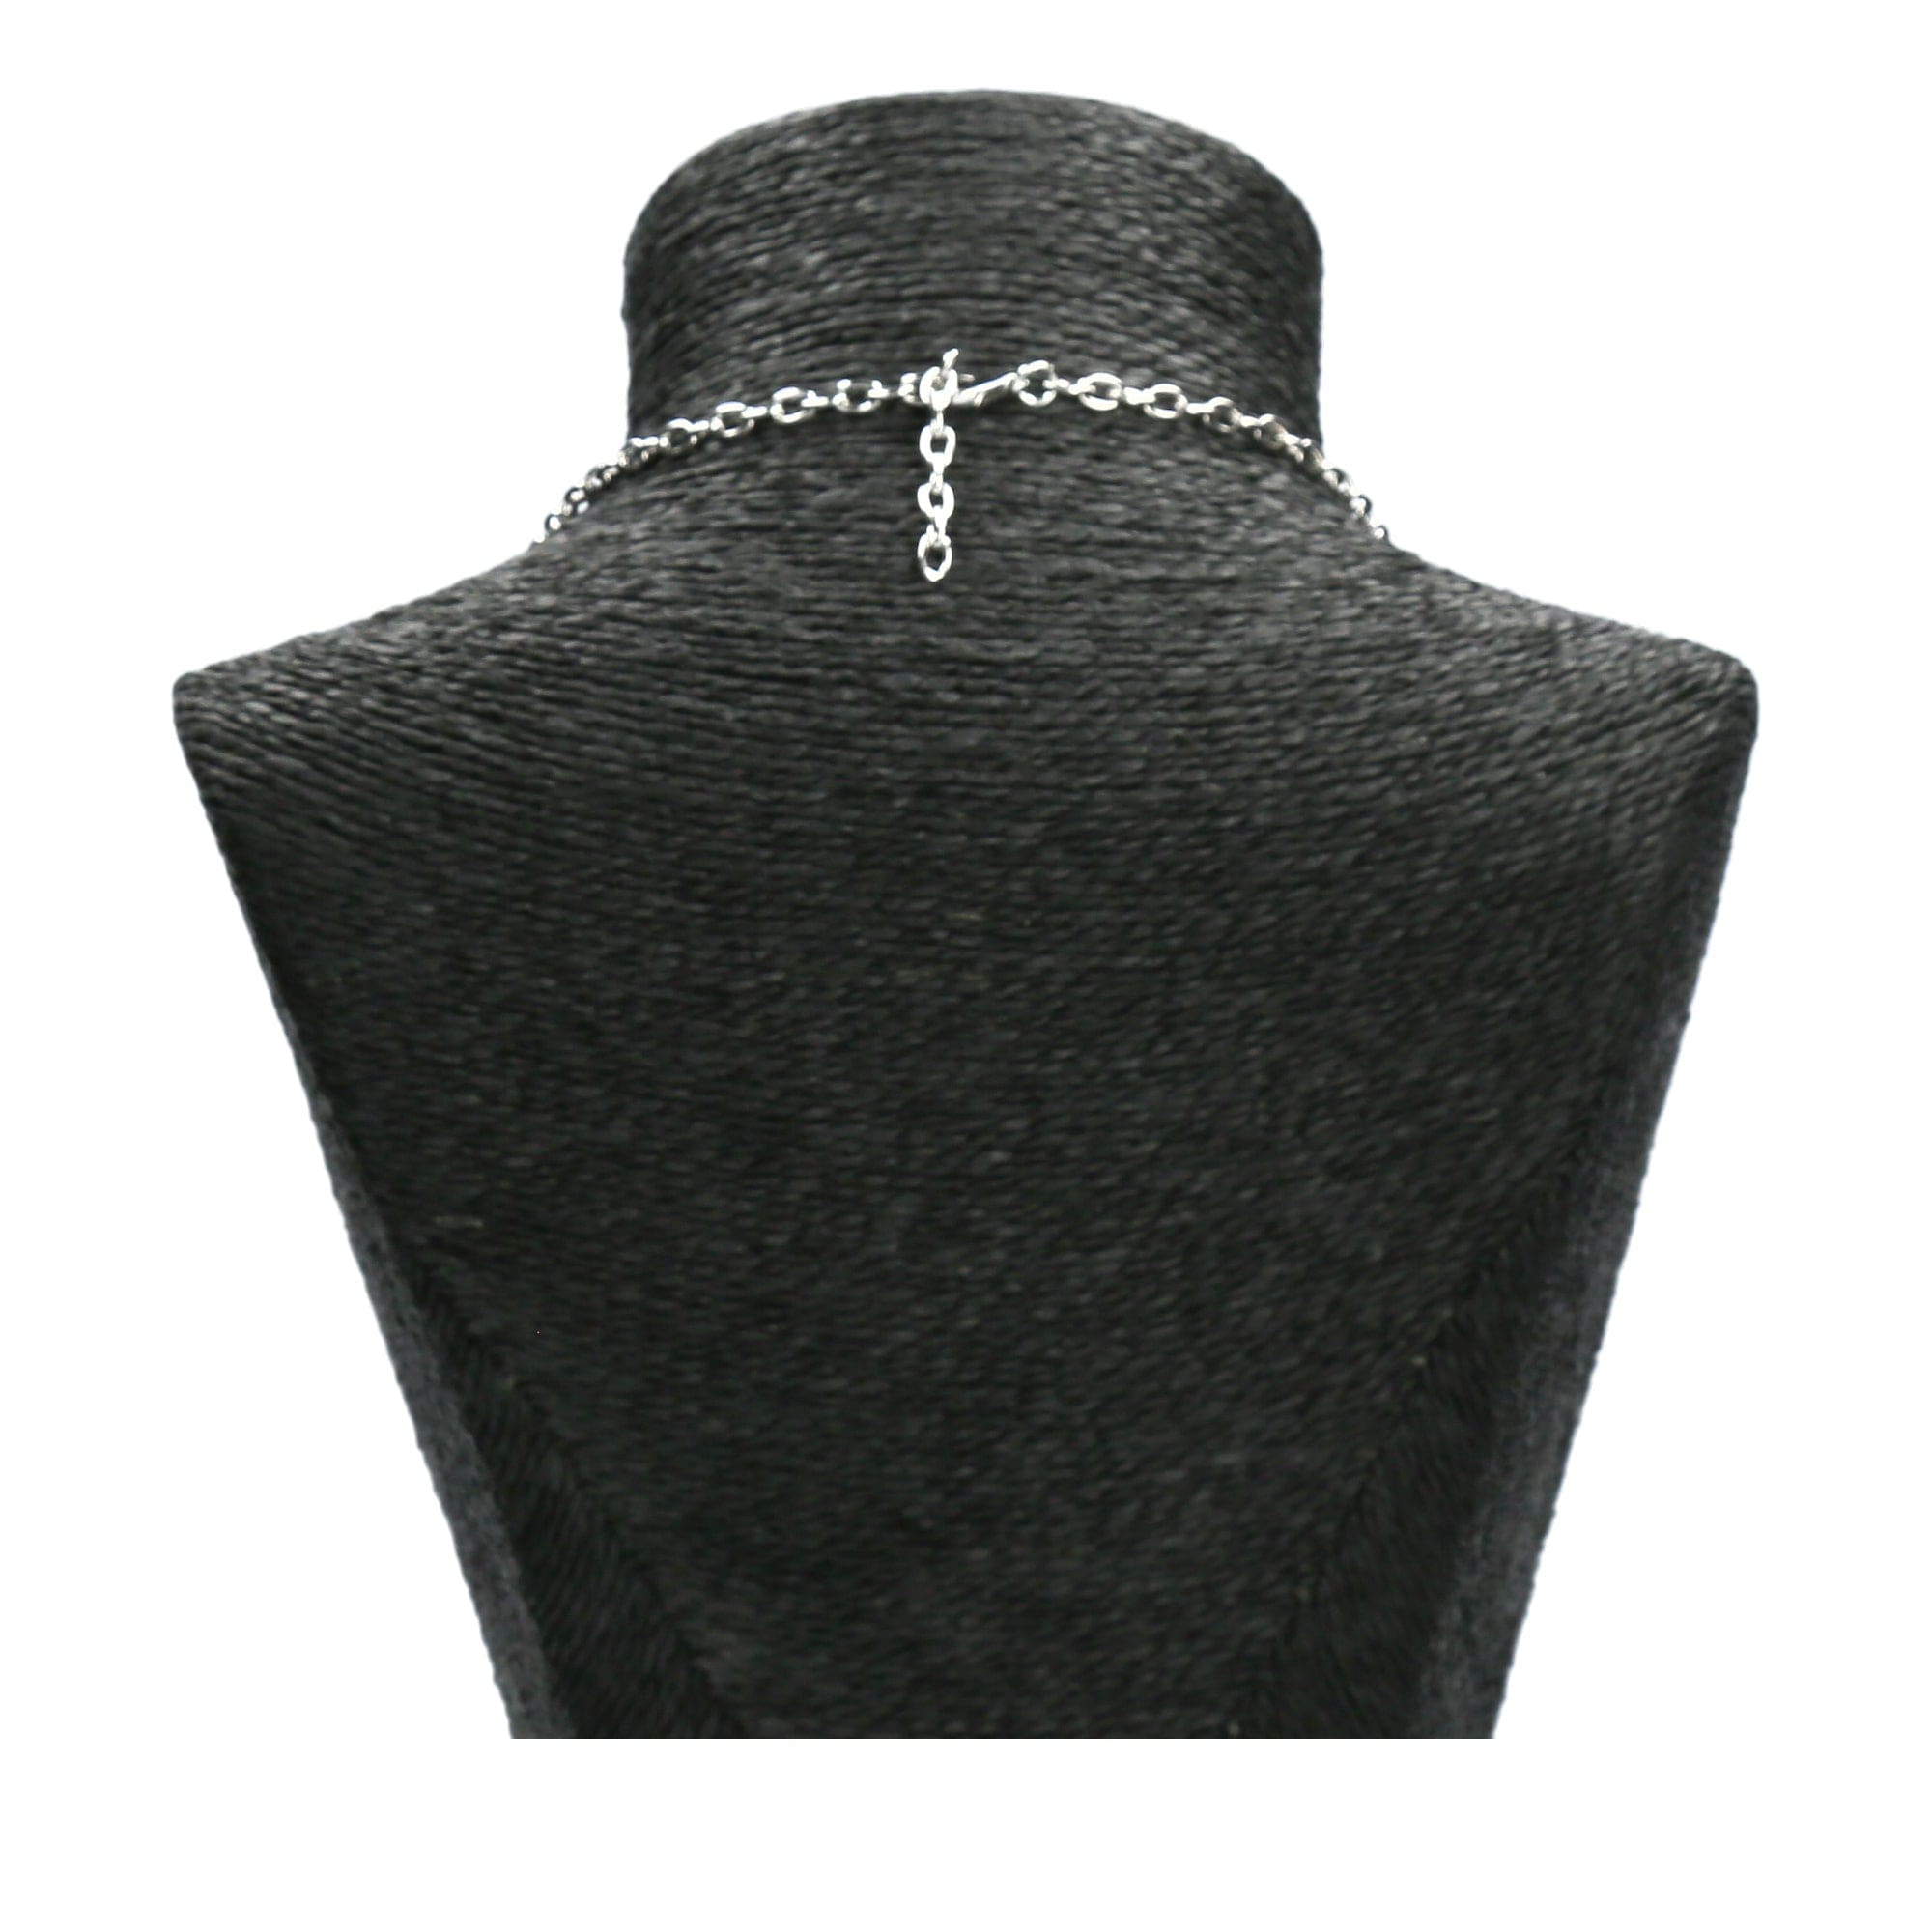 Jewelry set Clovis - Necklace